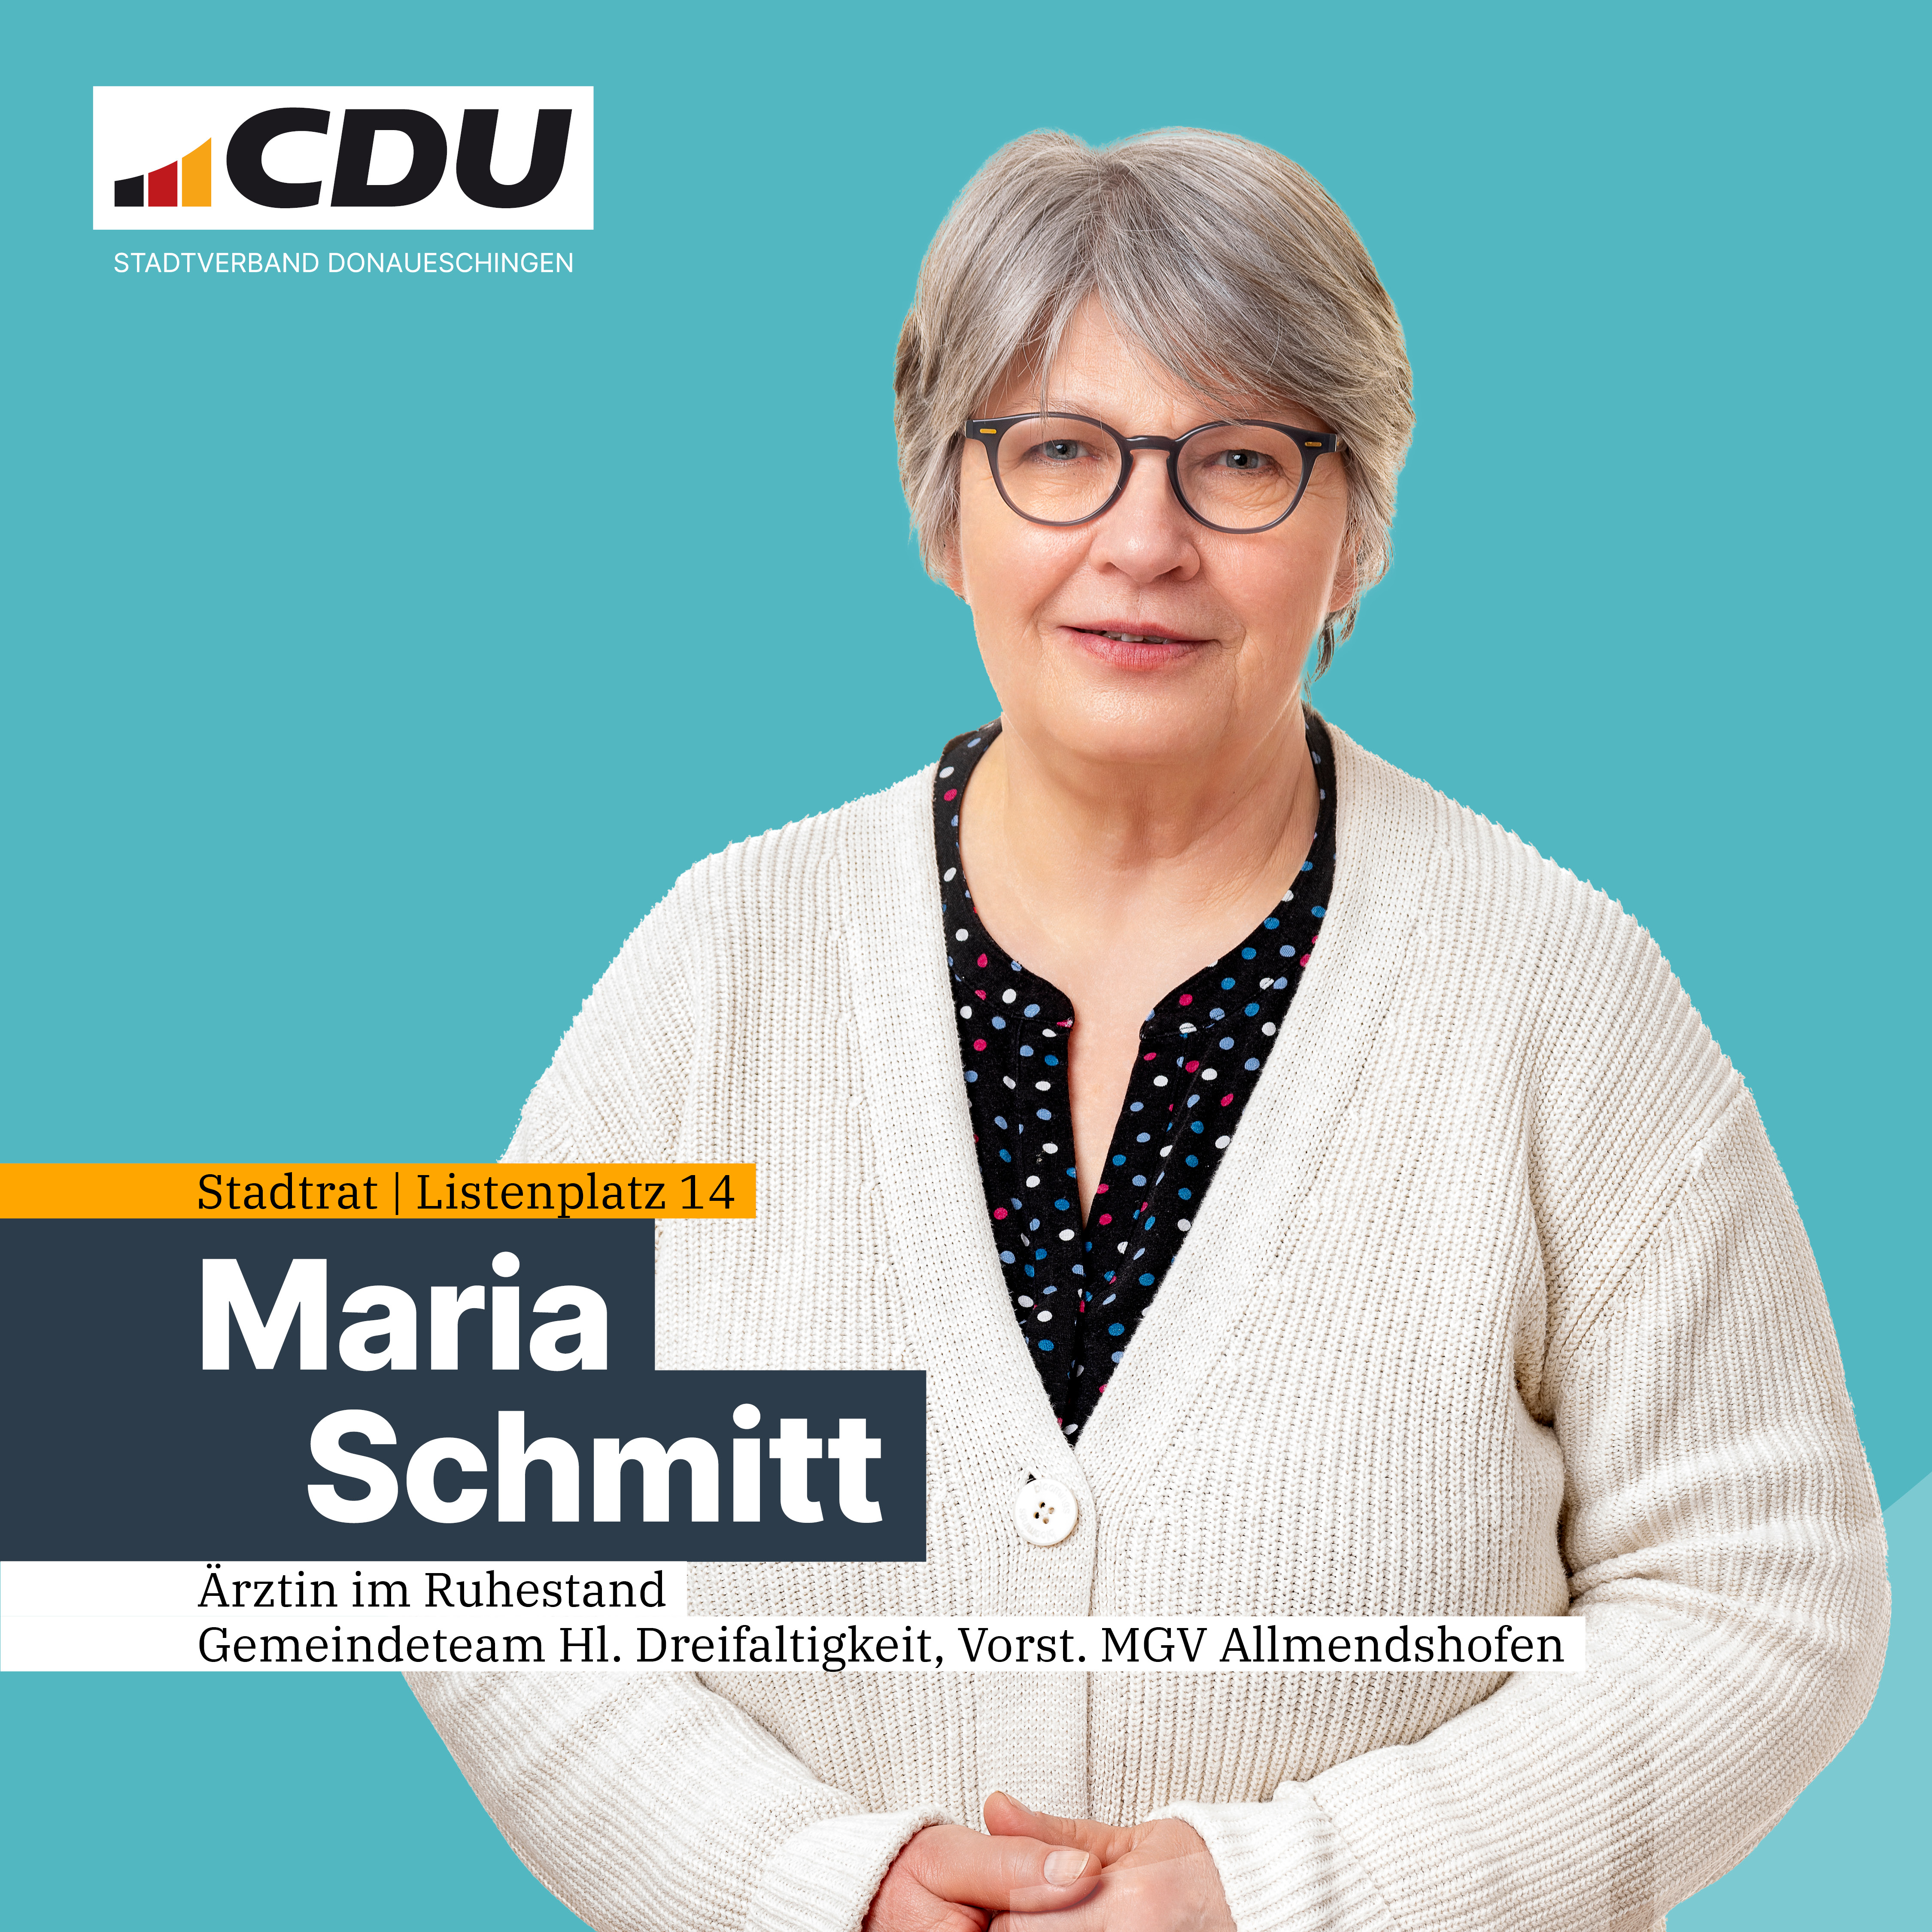  Maria Schmitt